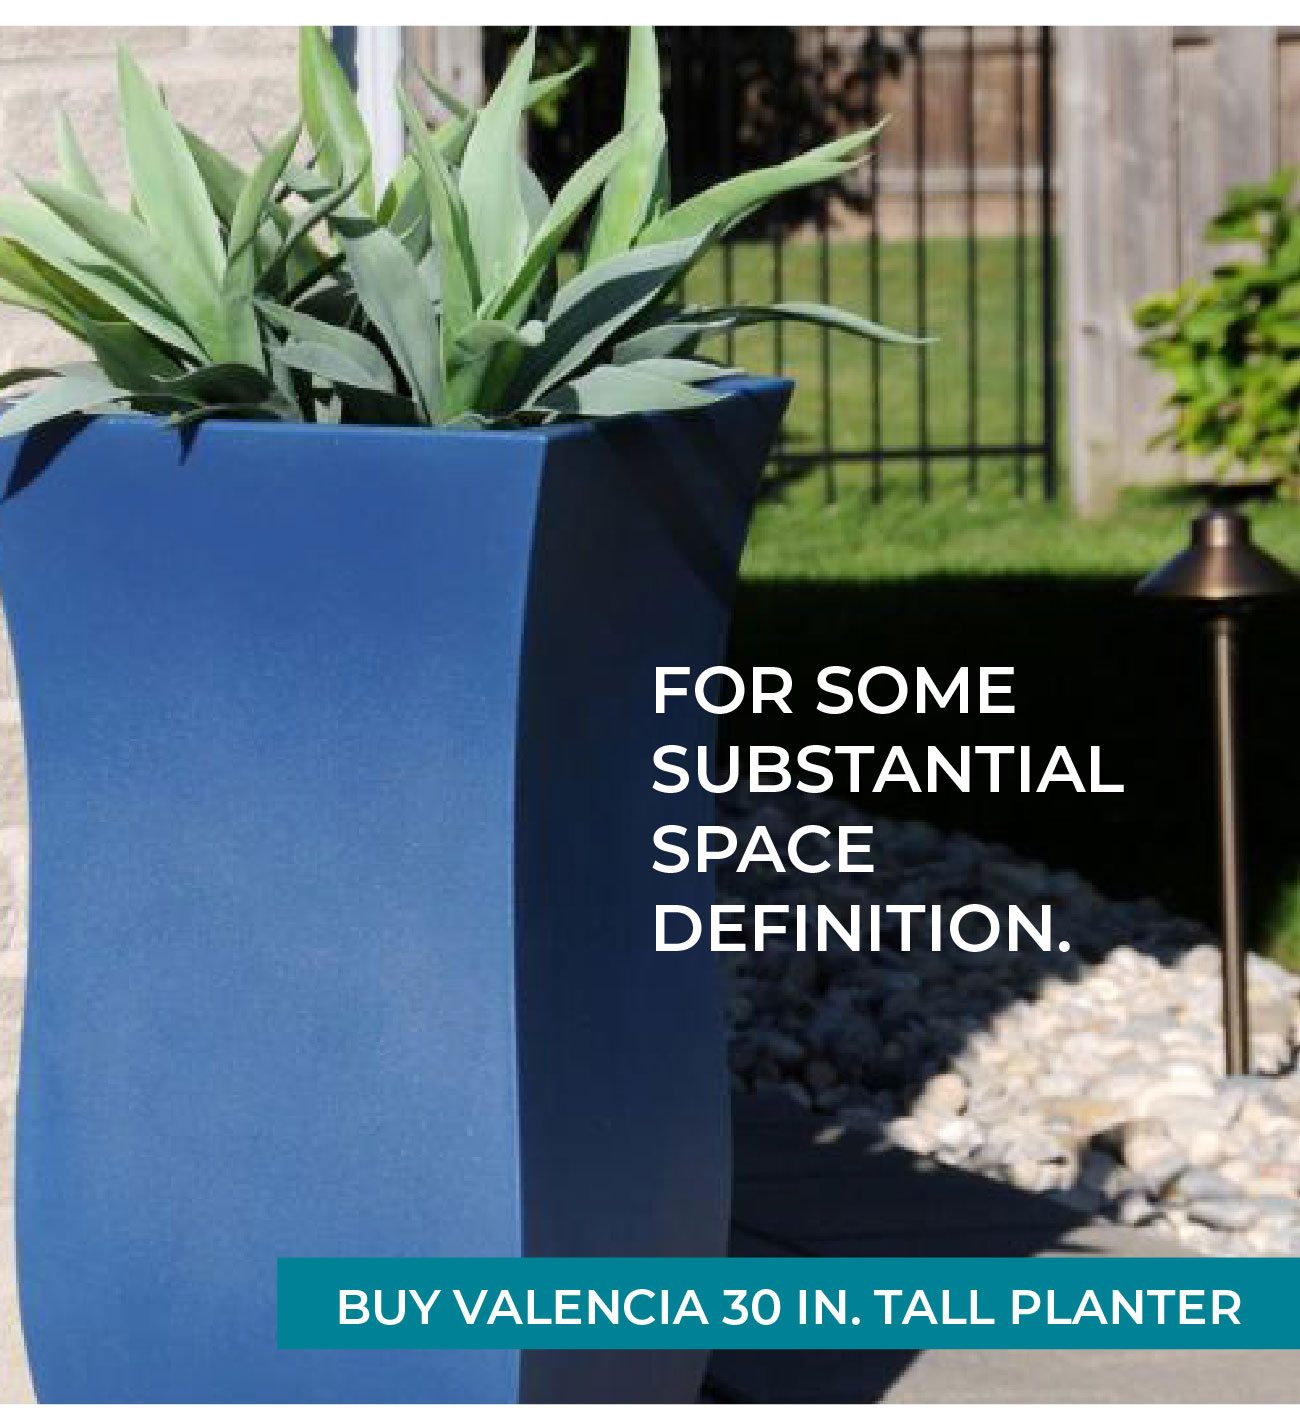 Valencia 30 in. Tall Planter